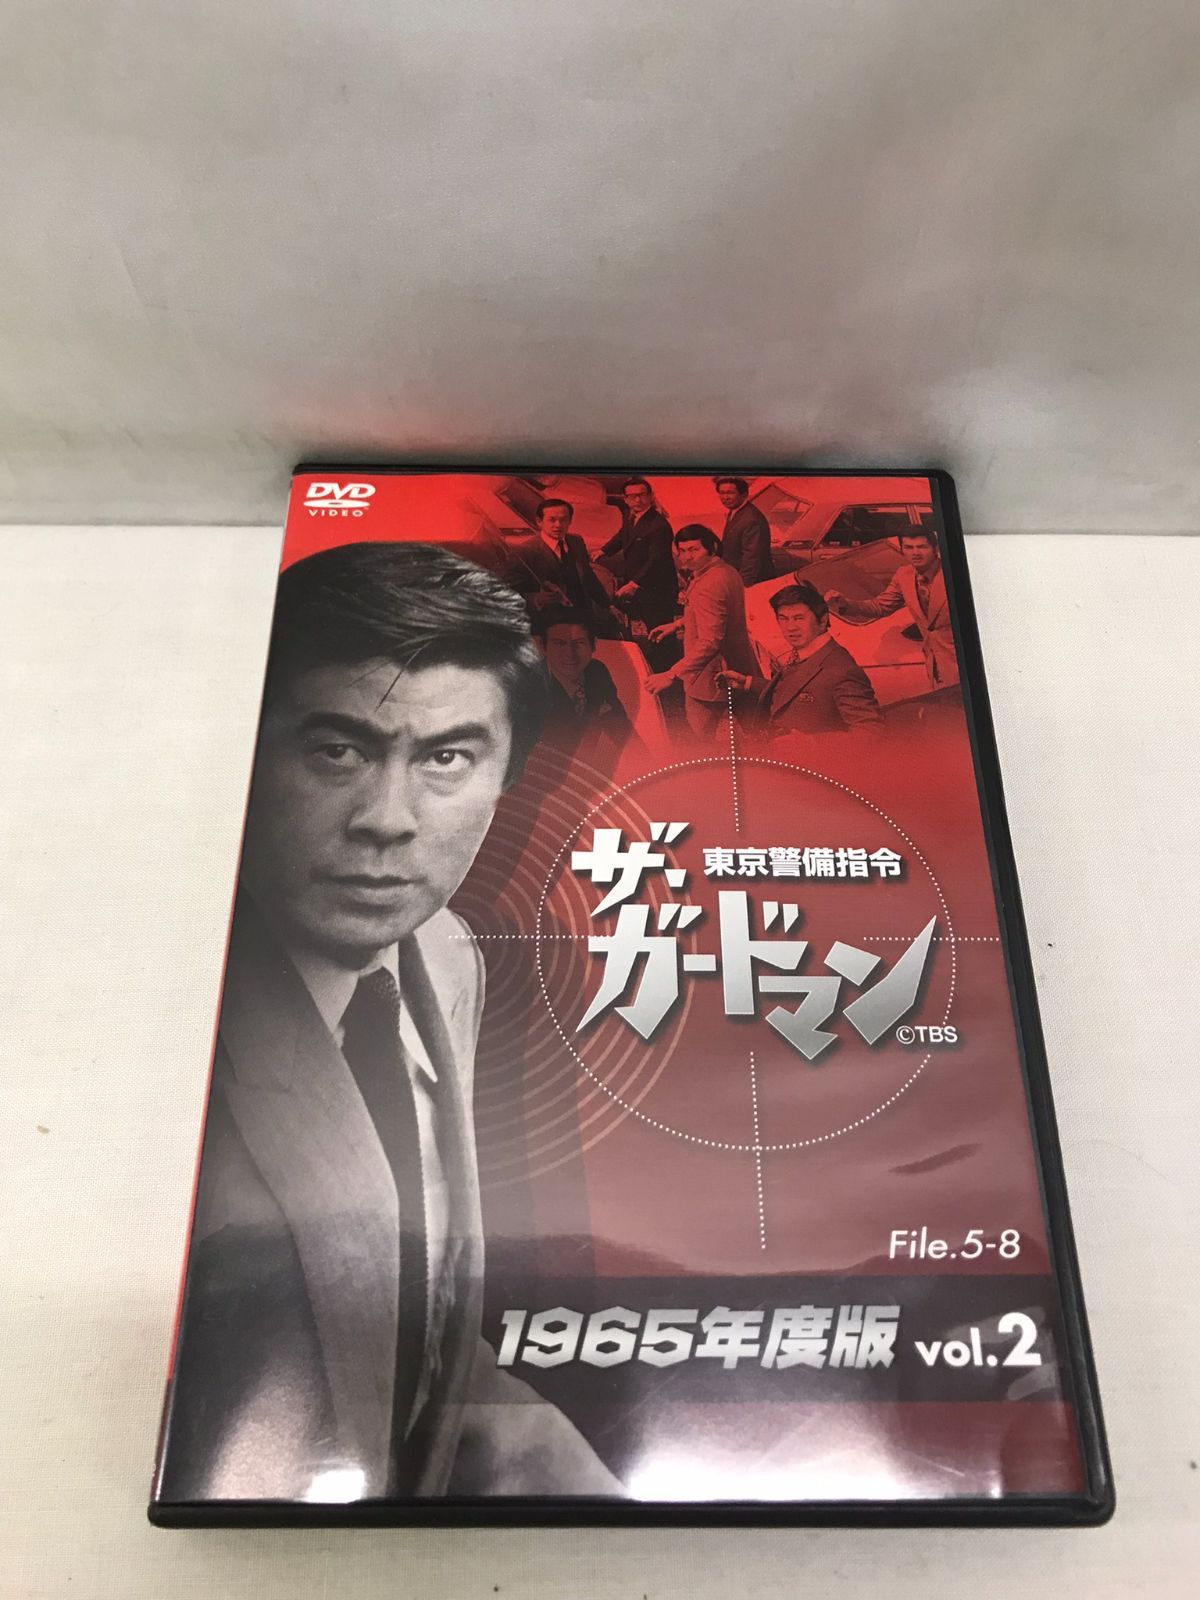 ザ・ガードマン東京警備指令1965年版VOL.2 [DVD]